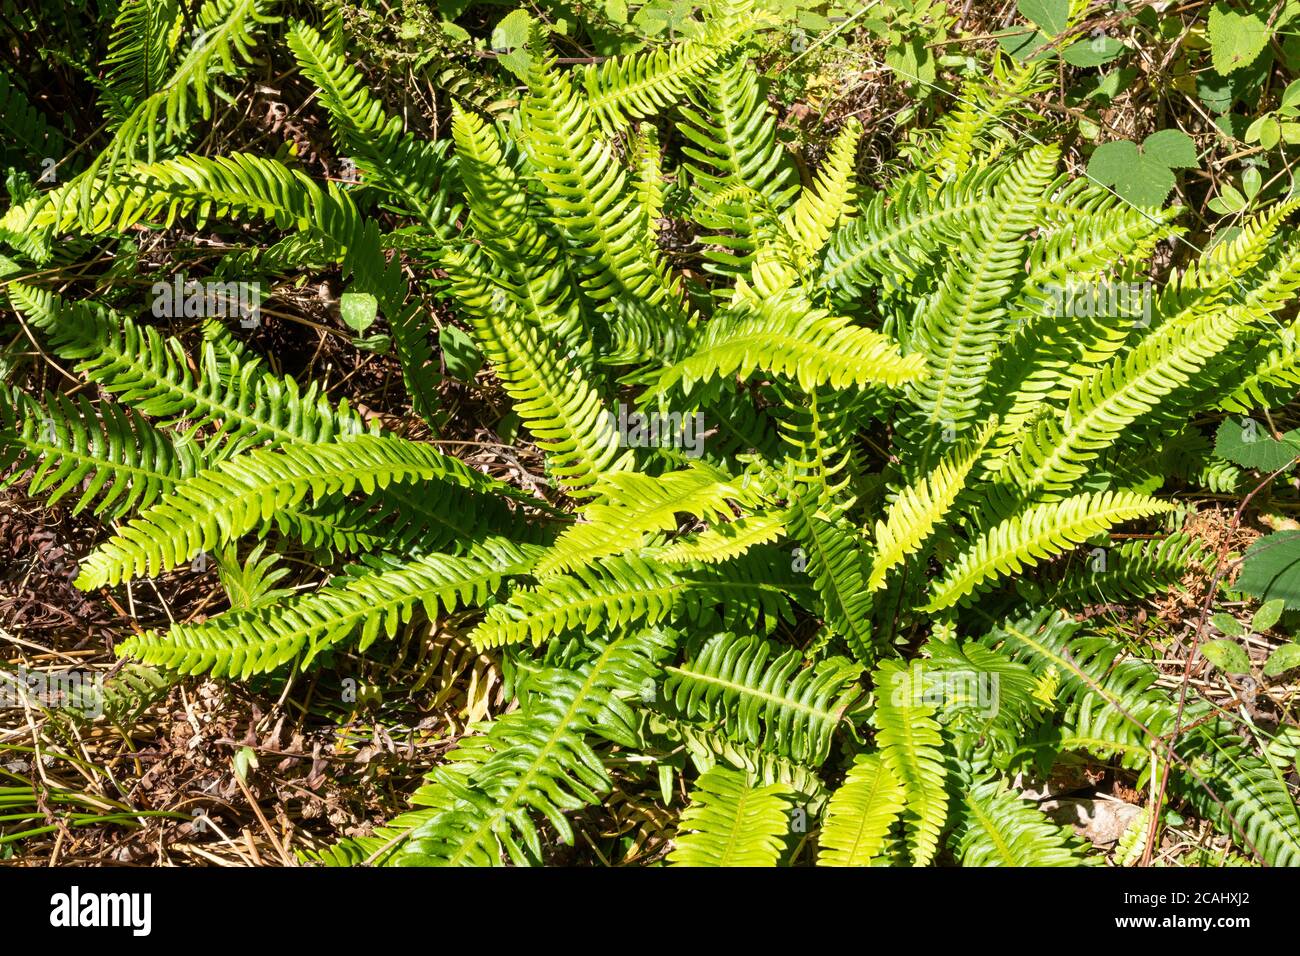 La fougère dure (Blechnum SPAlicant), également appelée fougère de cerf, une fougère vert vif qui est vert permanent et a deux types de frondes, le Royaume-Uni Banque D'Images